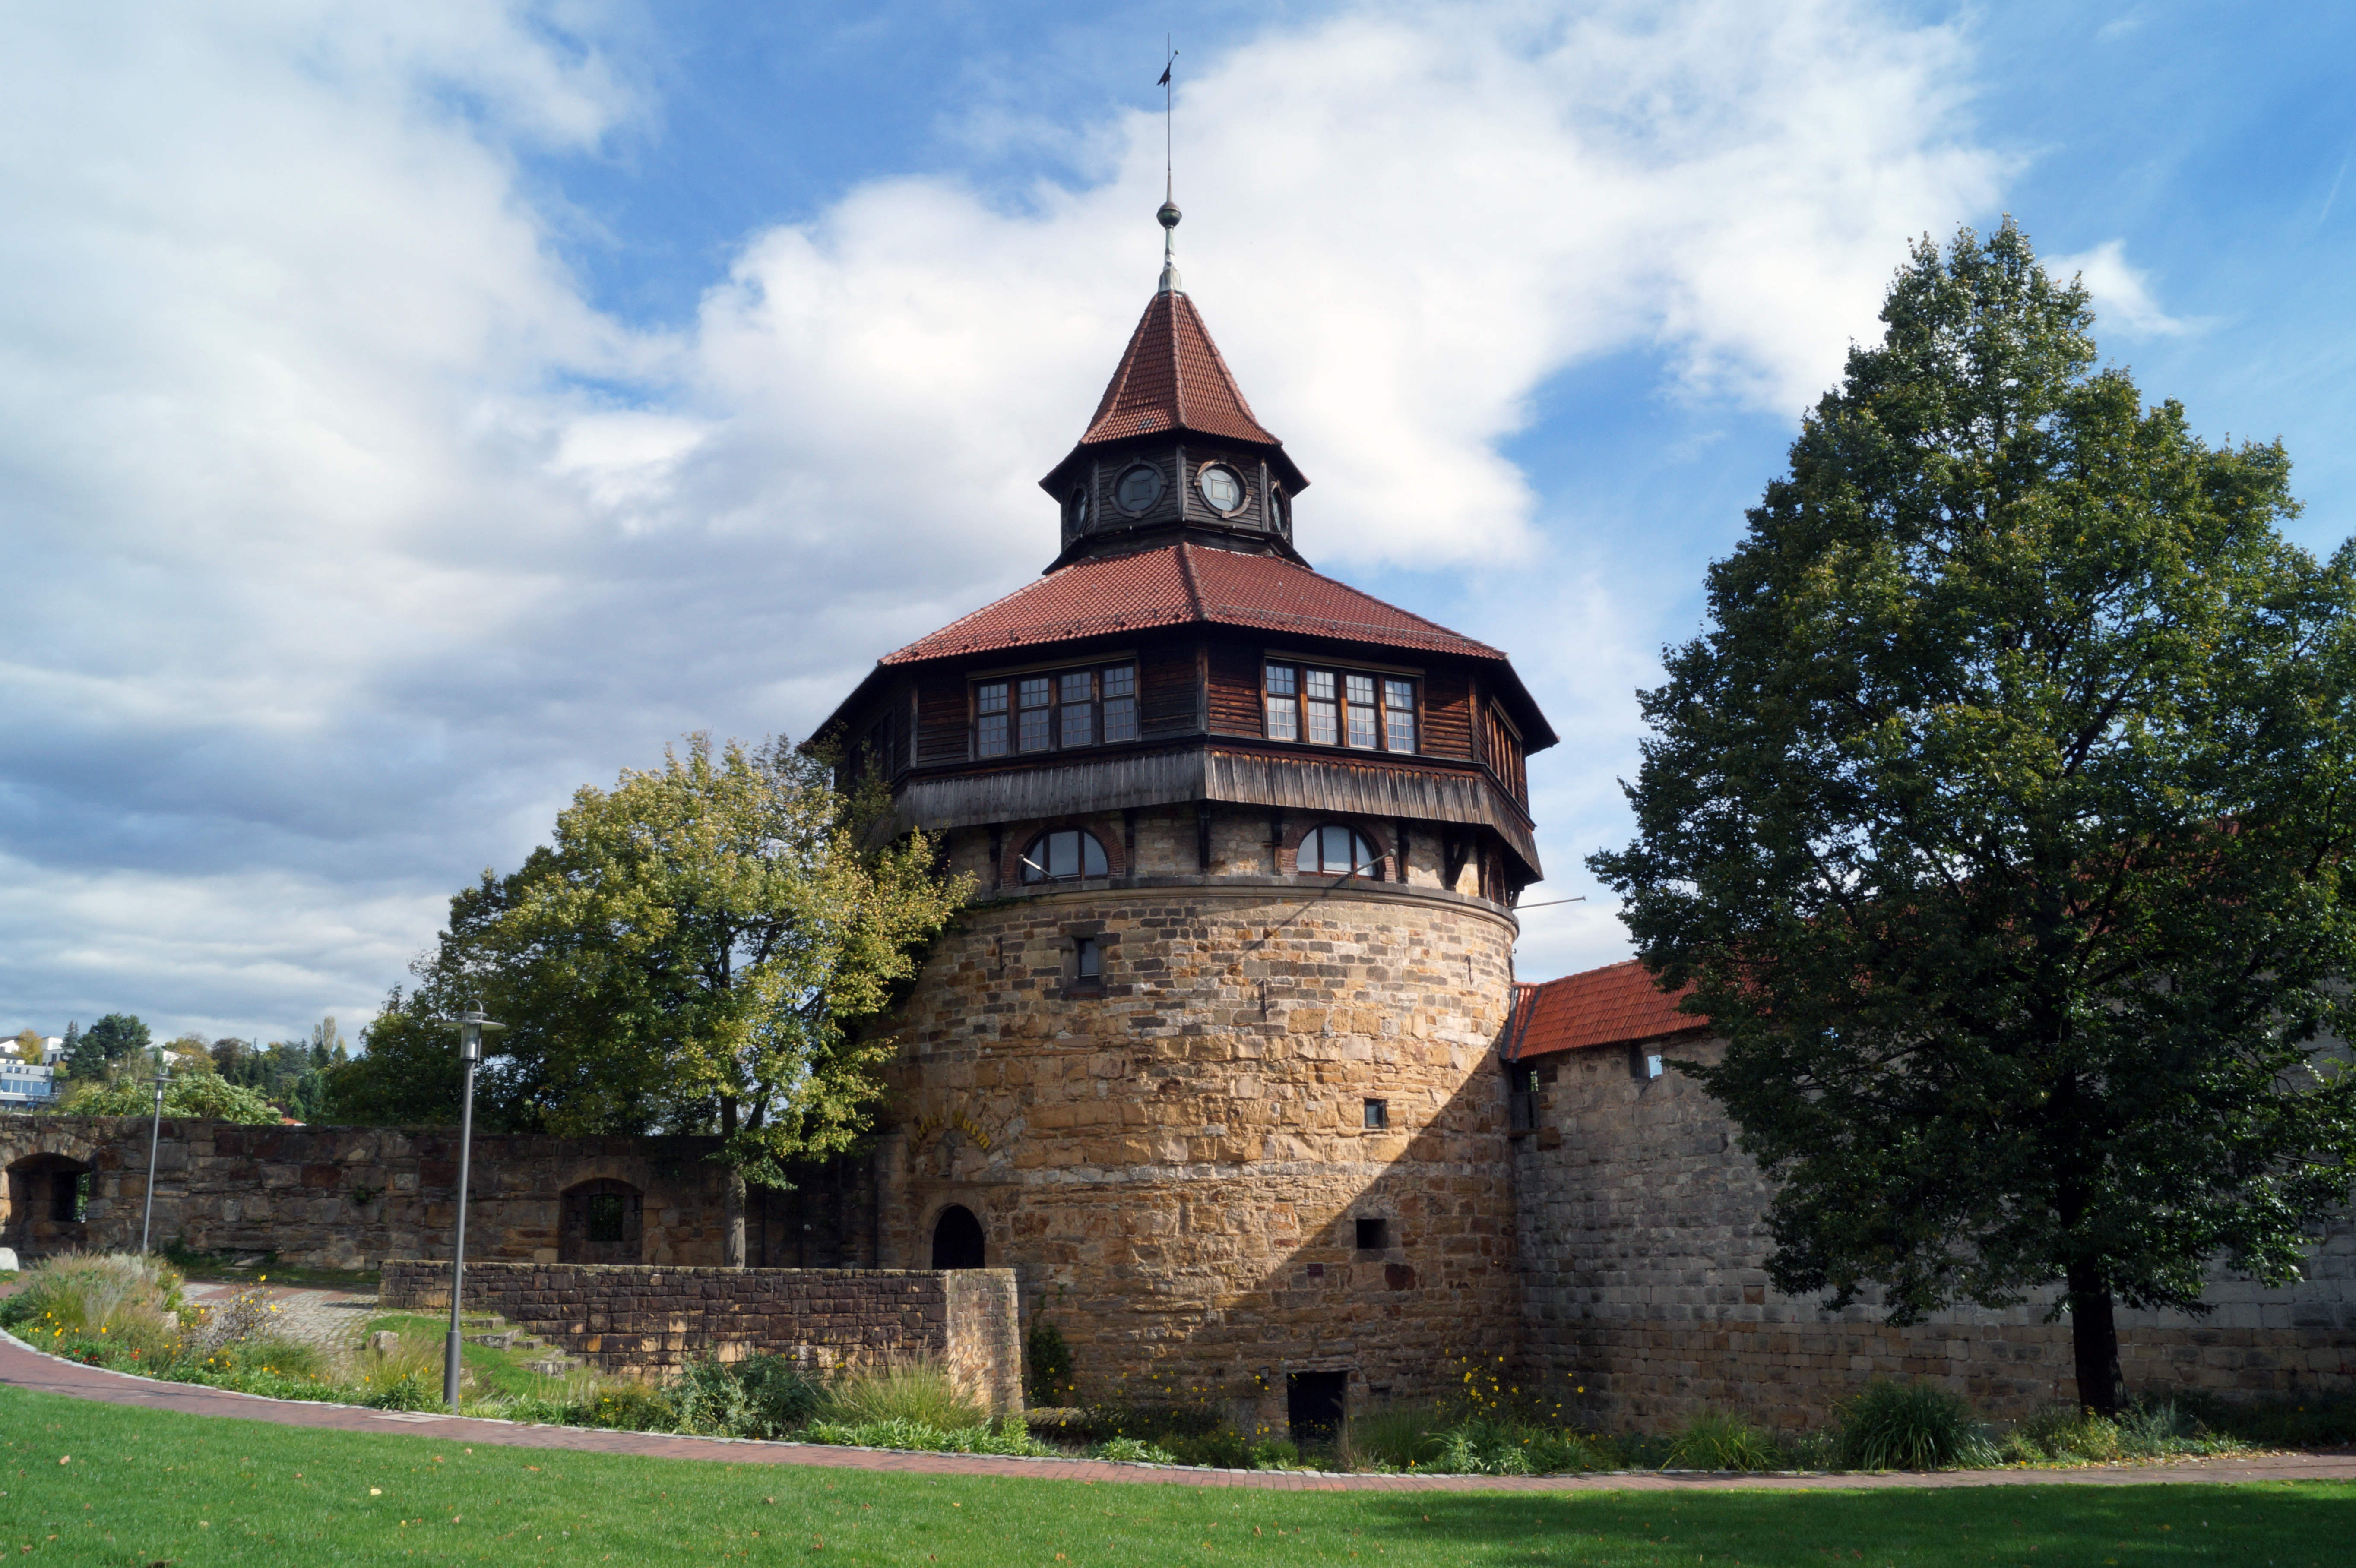 Tower of the castle in Esslingen.. Morgenstadt Smart City